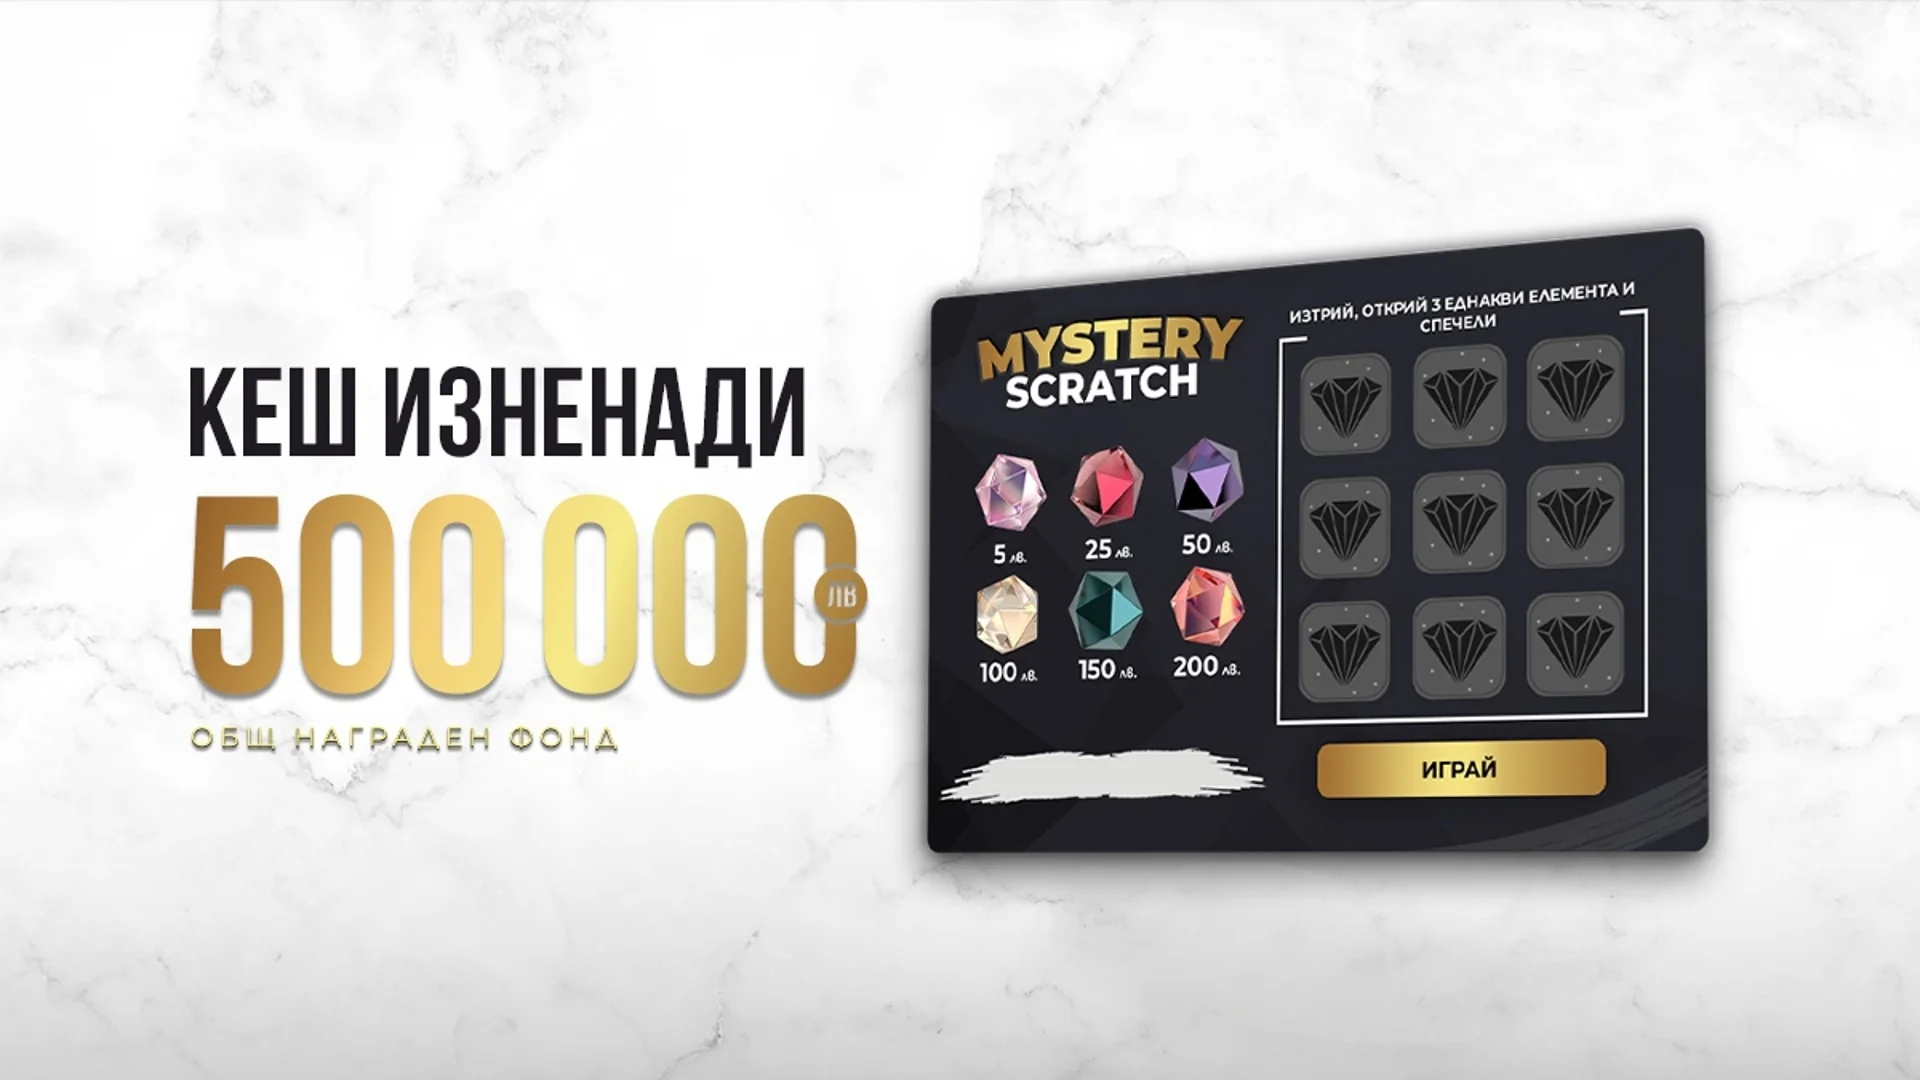 Вълнуващо изживяване с новата Mystery Scratch карта с кеш награди по време на игра на winbet.bg